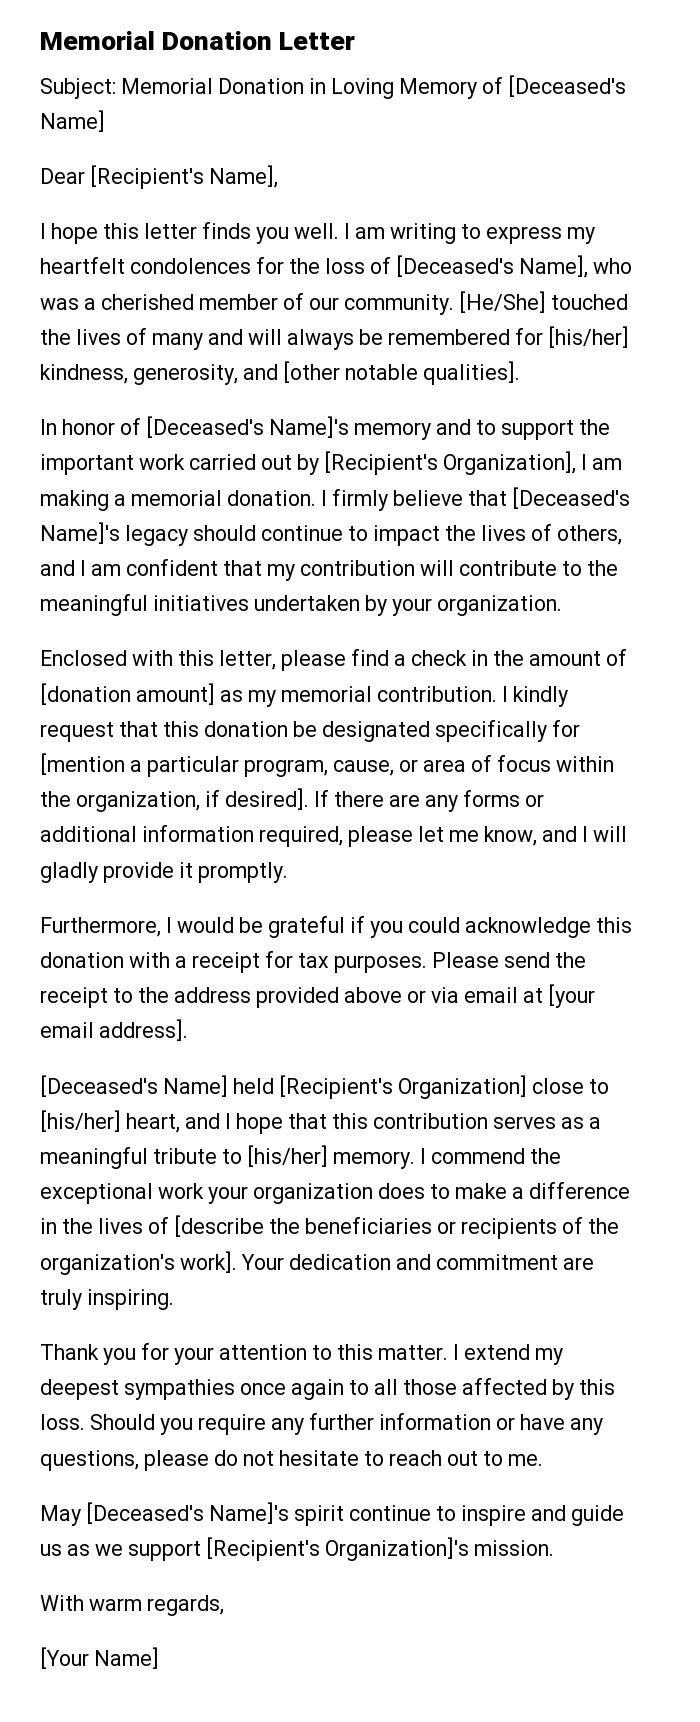 Memorial Donation Letter